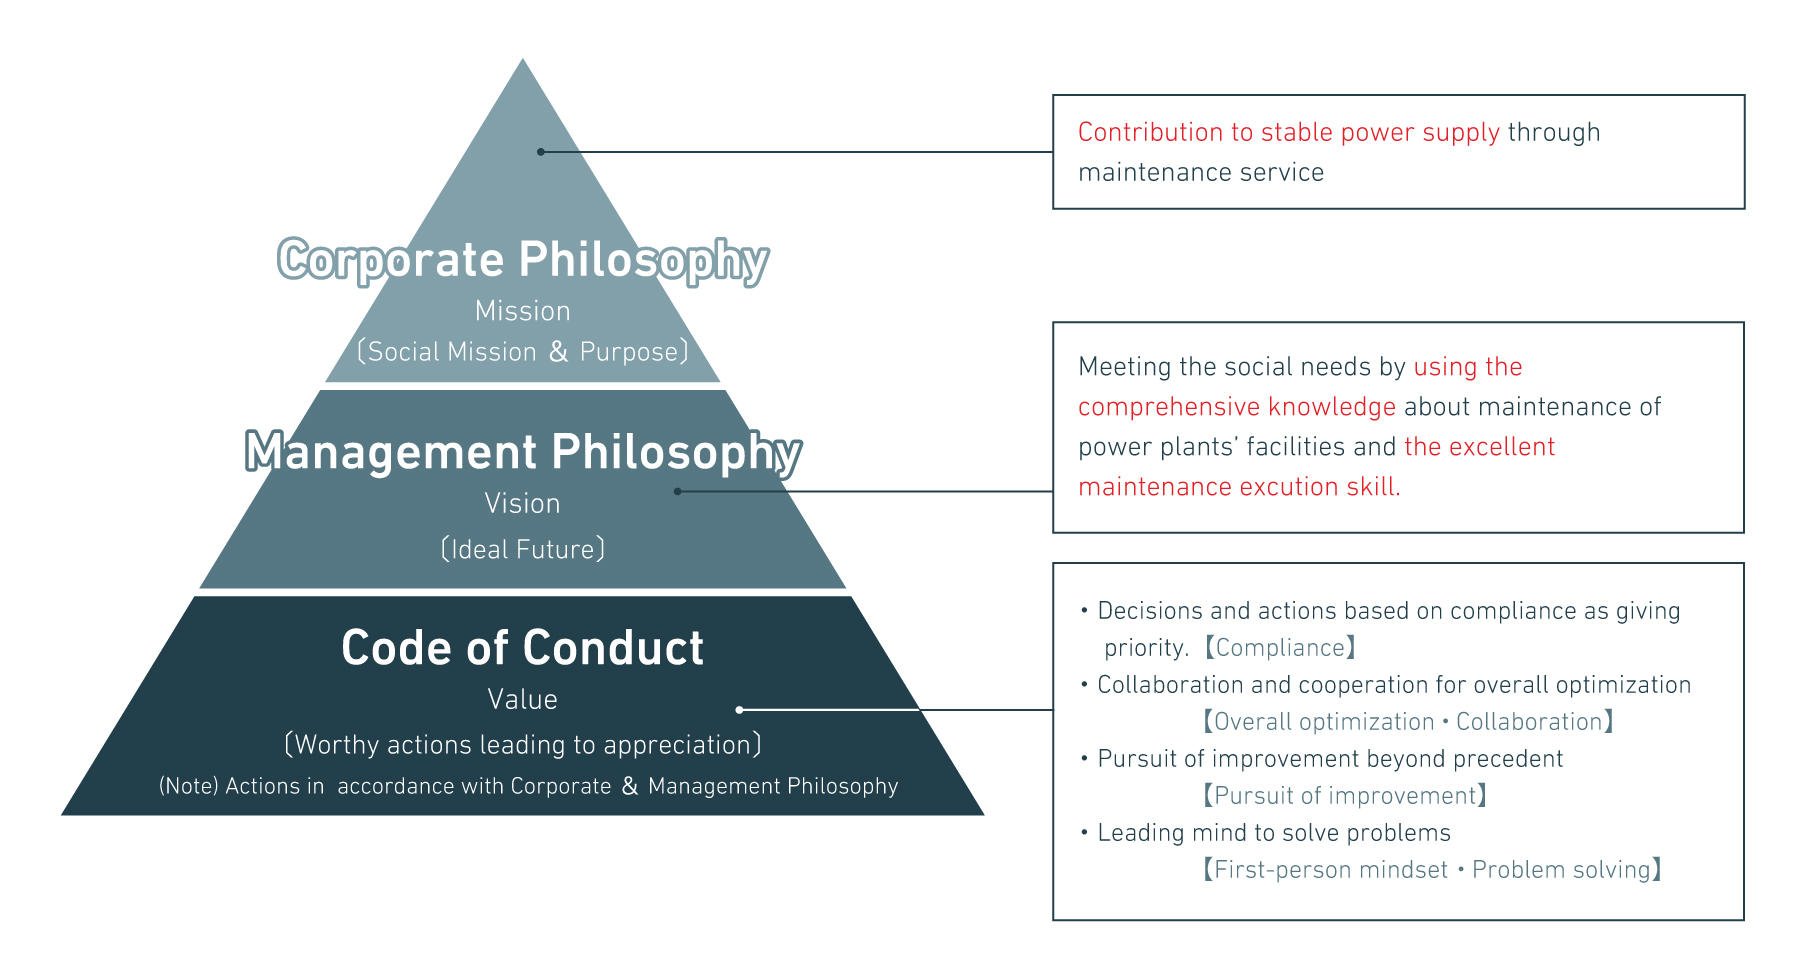 Management Philosophy